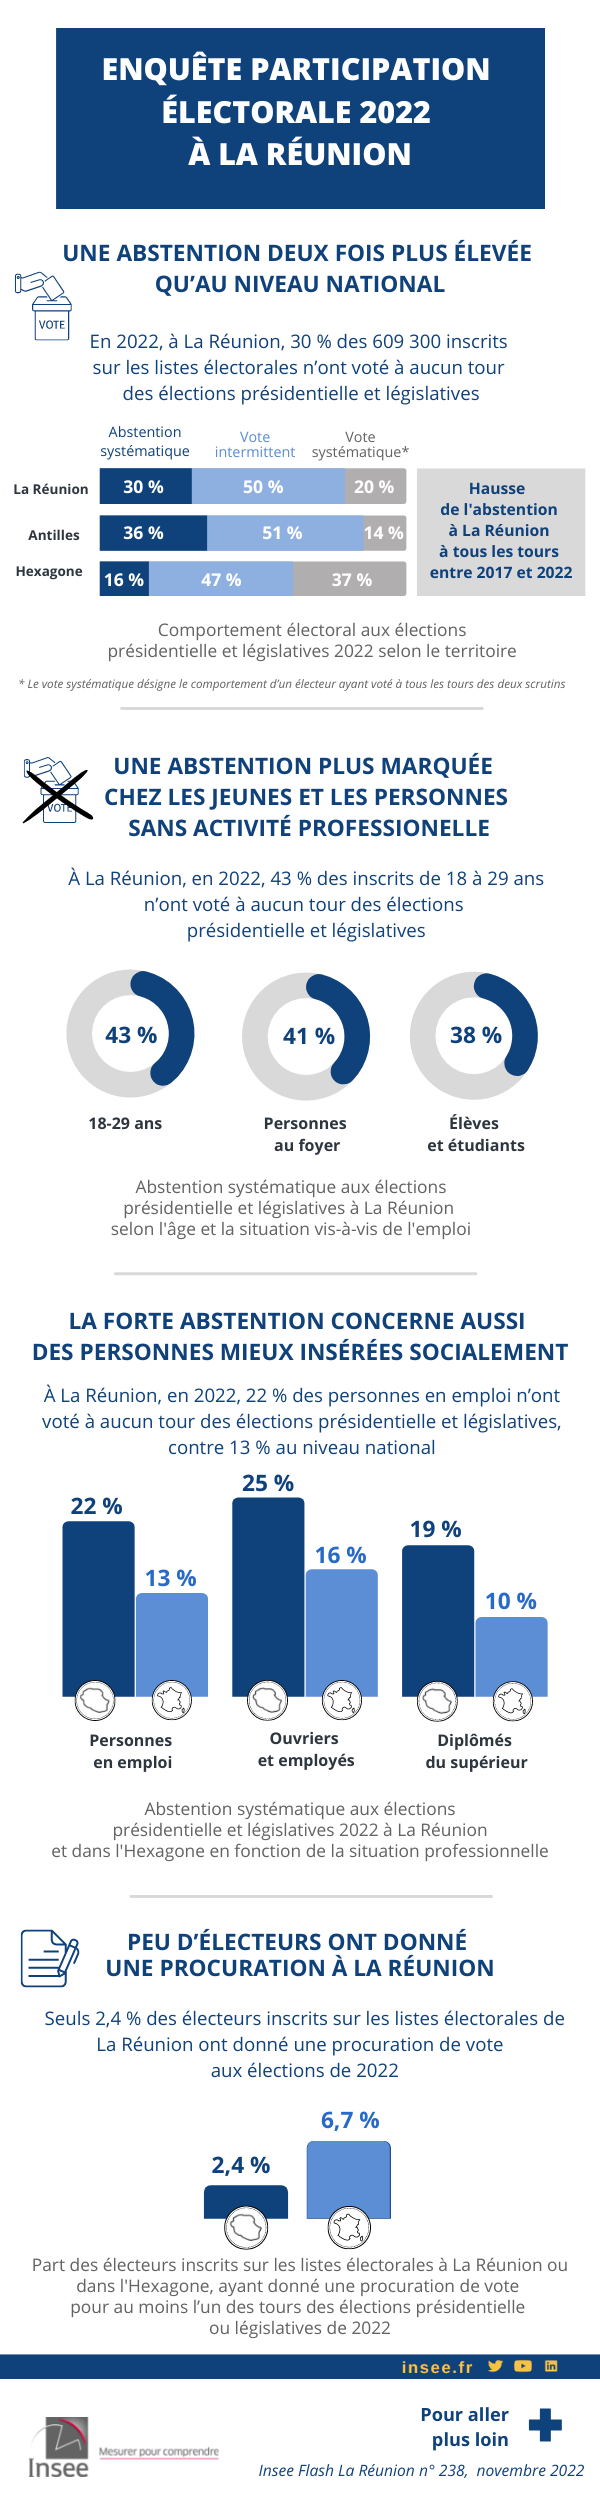 Infographie sur l'Enquête Participation électorale 2022 à La Réunion.